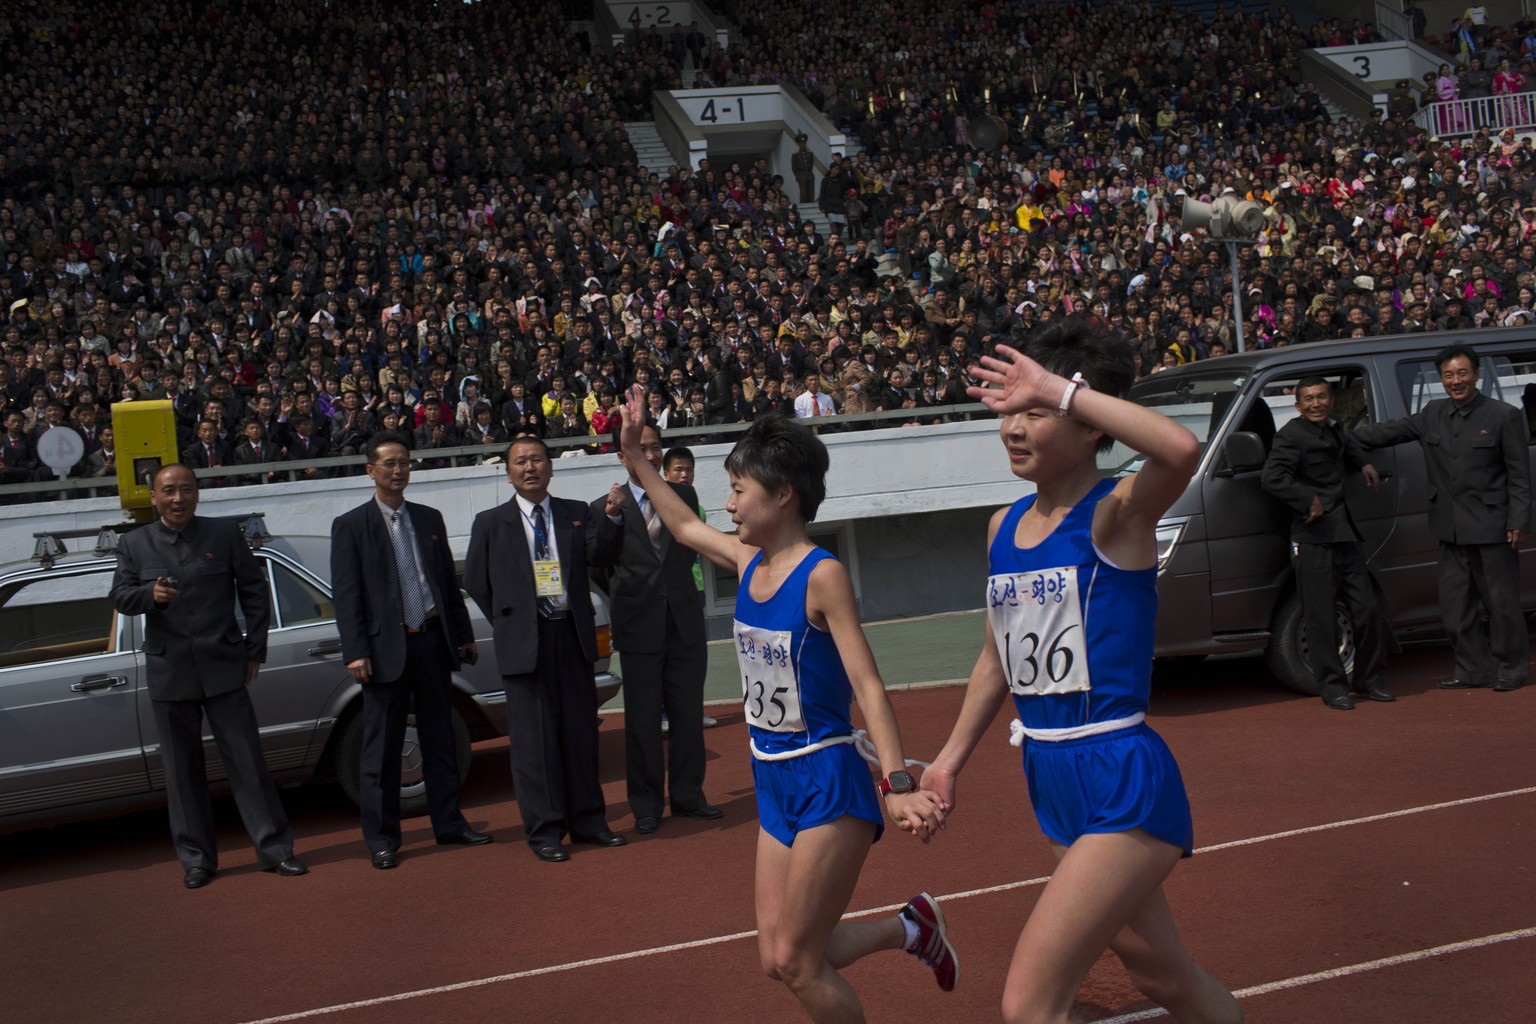 Die Zwillingsschwestern&nbsp;Kim Hye Gyong (135) und Kim Hye Song (136) feiern ihren Doppelsieg bei den Frauen mit einer Siegesrunde im Kim Il Sung Stadion.